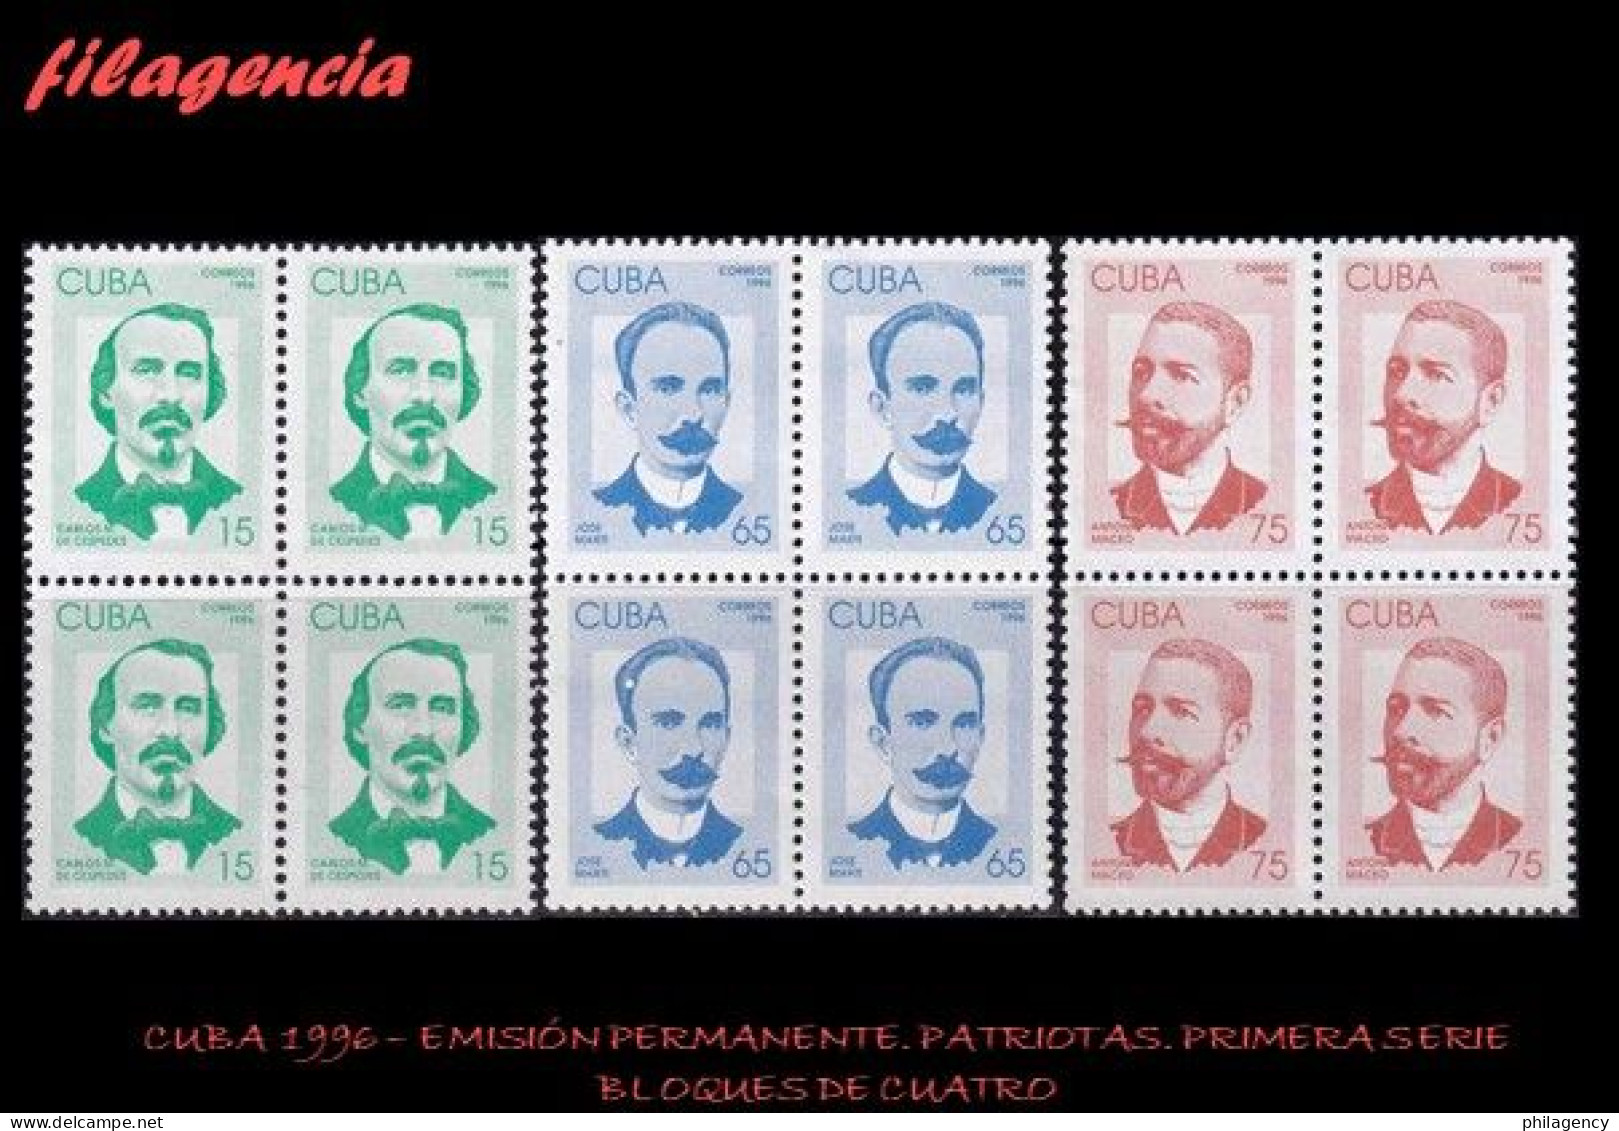 CUBA. BLOQUES DE CUATRO. 1996-01 EMISIÓN PERMANENTE. PATRIOTAS CUBANOS. PRIMERA SERIE - Ongebruikt